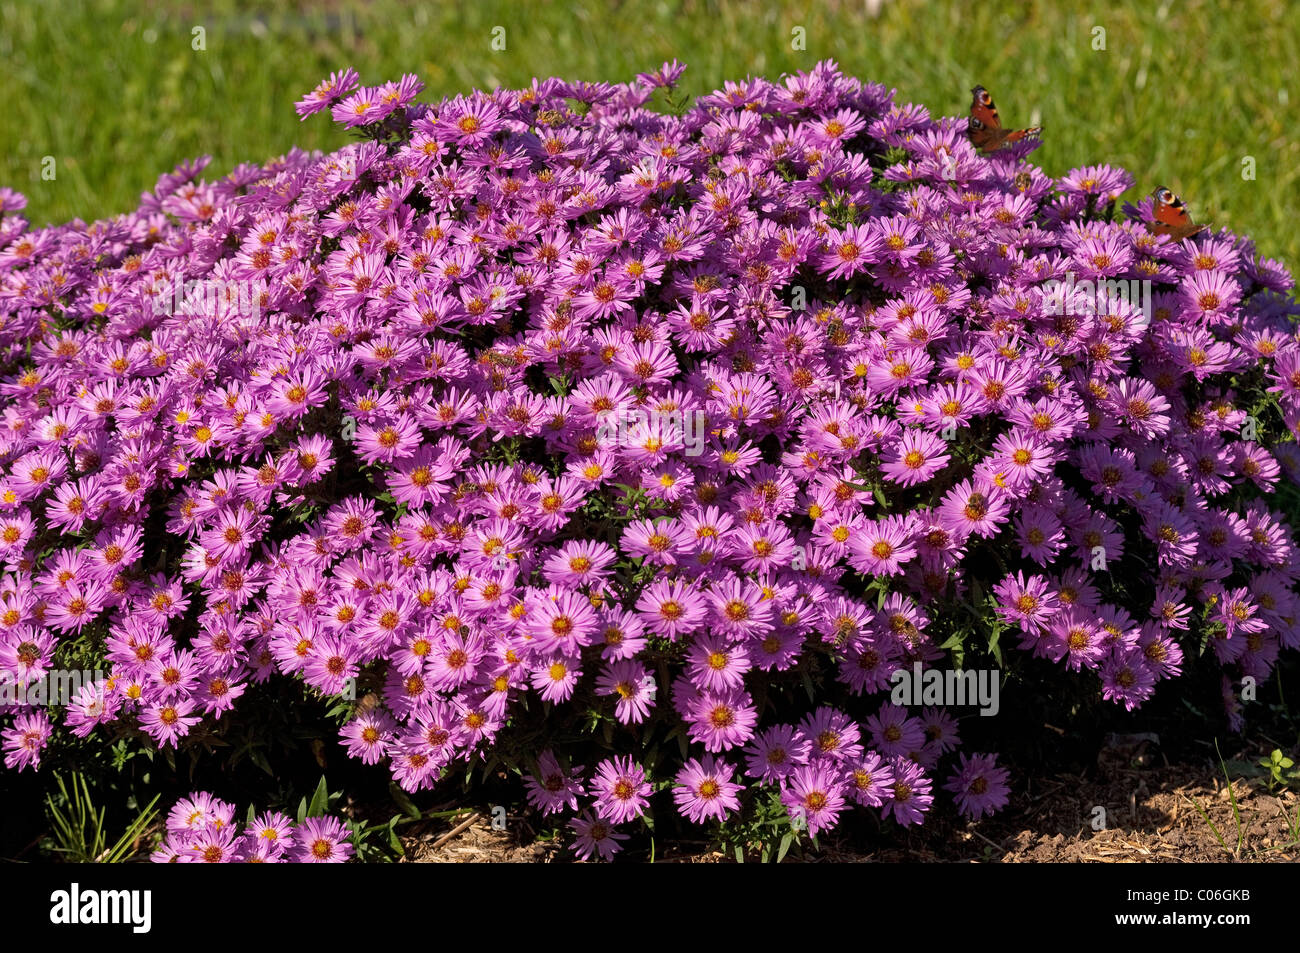 Rosenwichtel Bushy Aster (Aster dumosus Rosenwichtel), flowering stand. Stock Photo